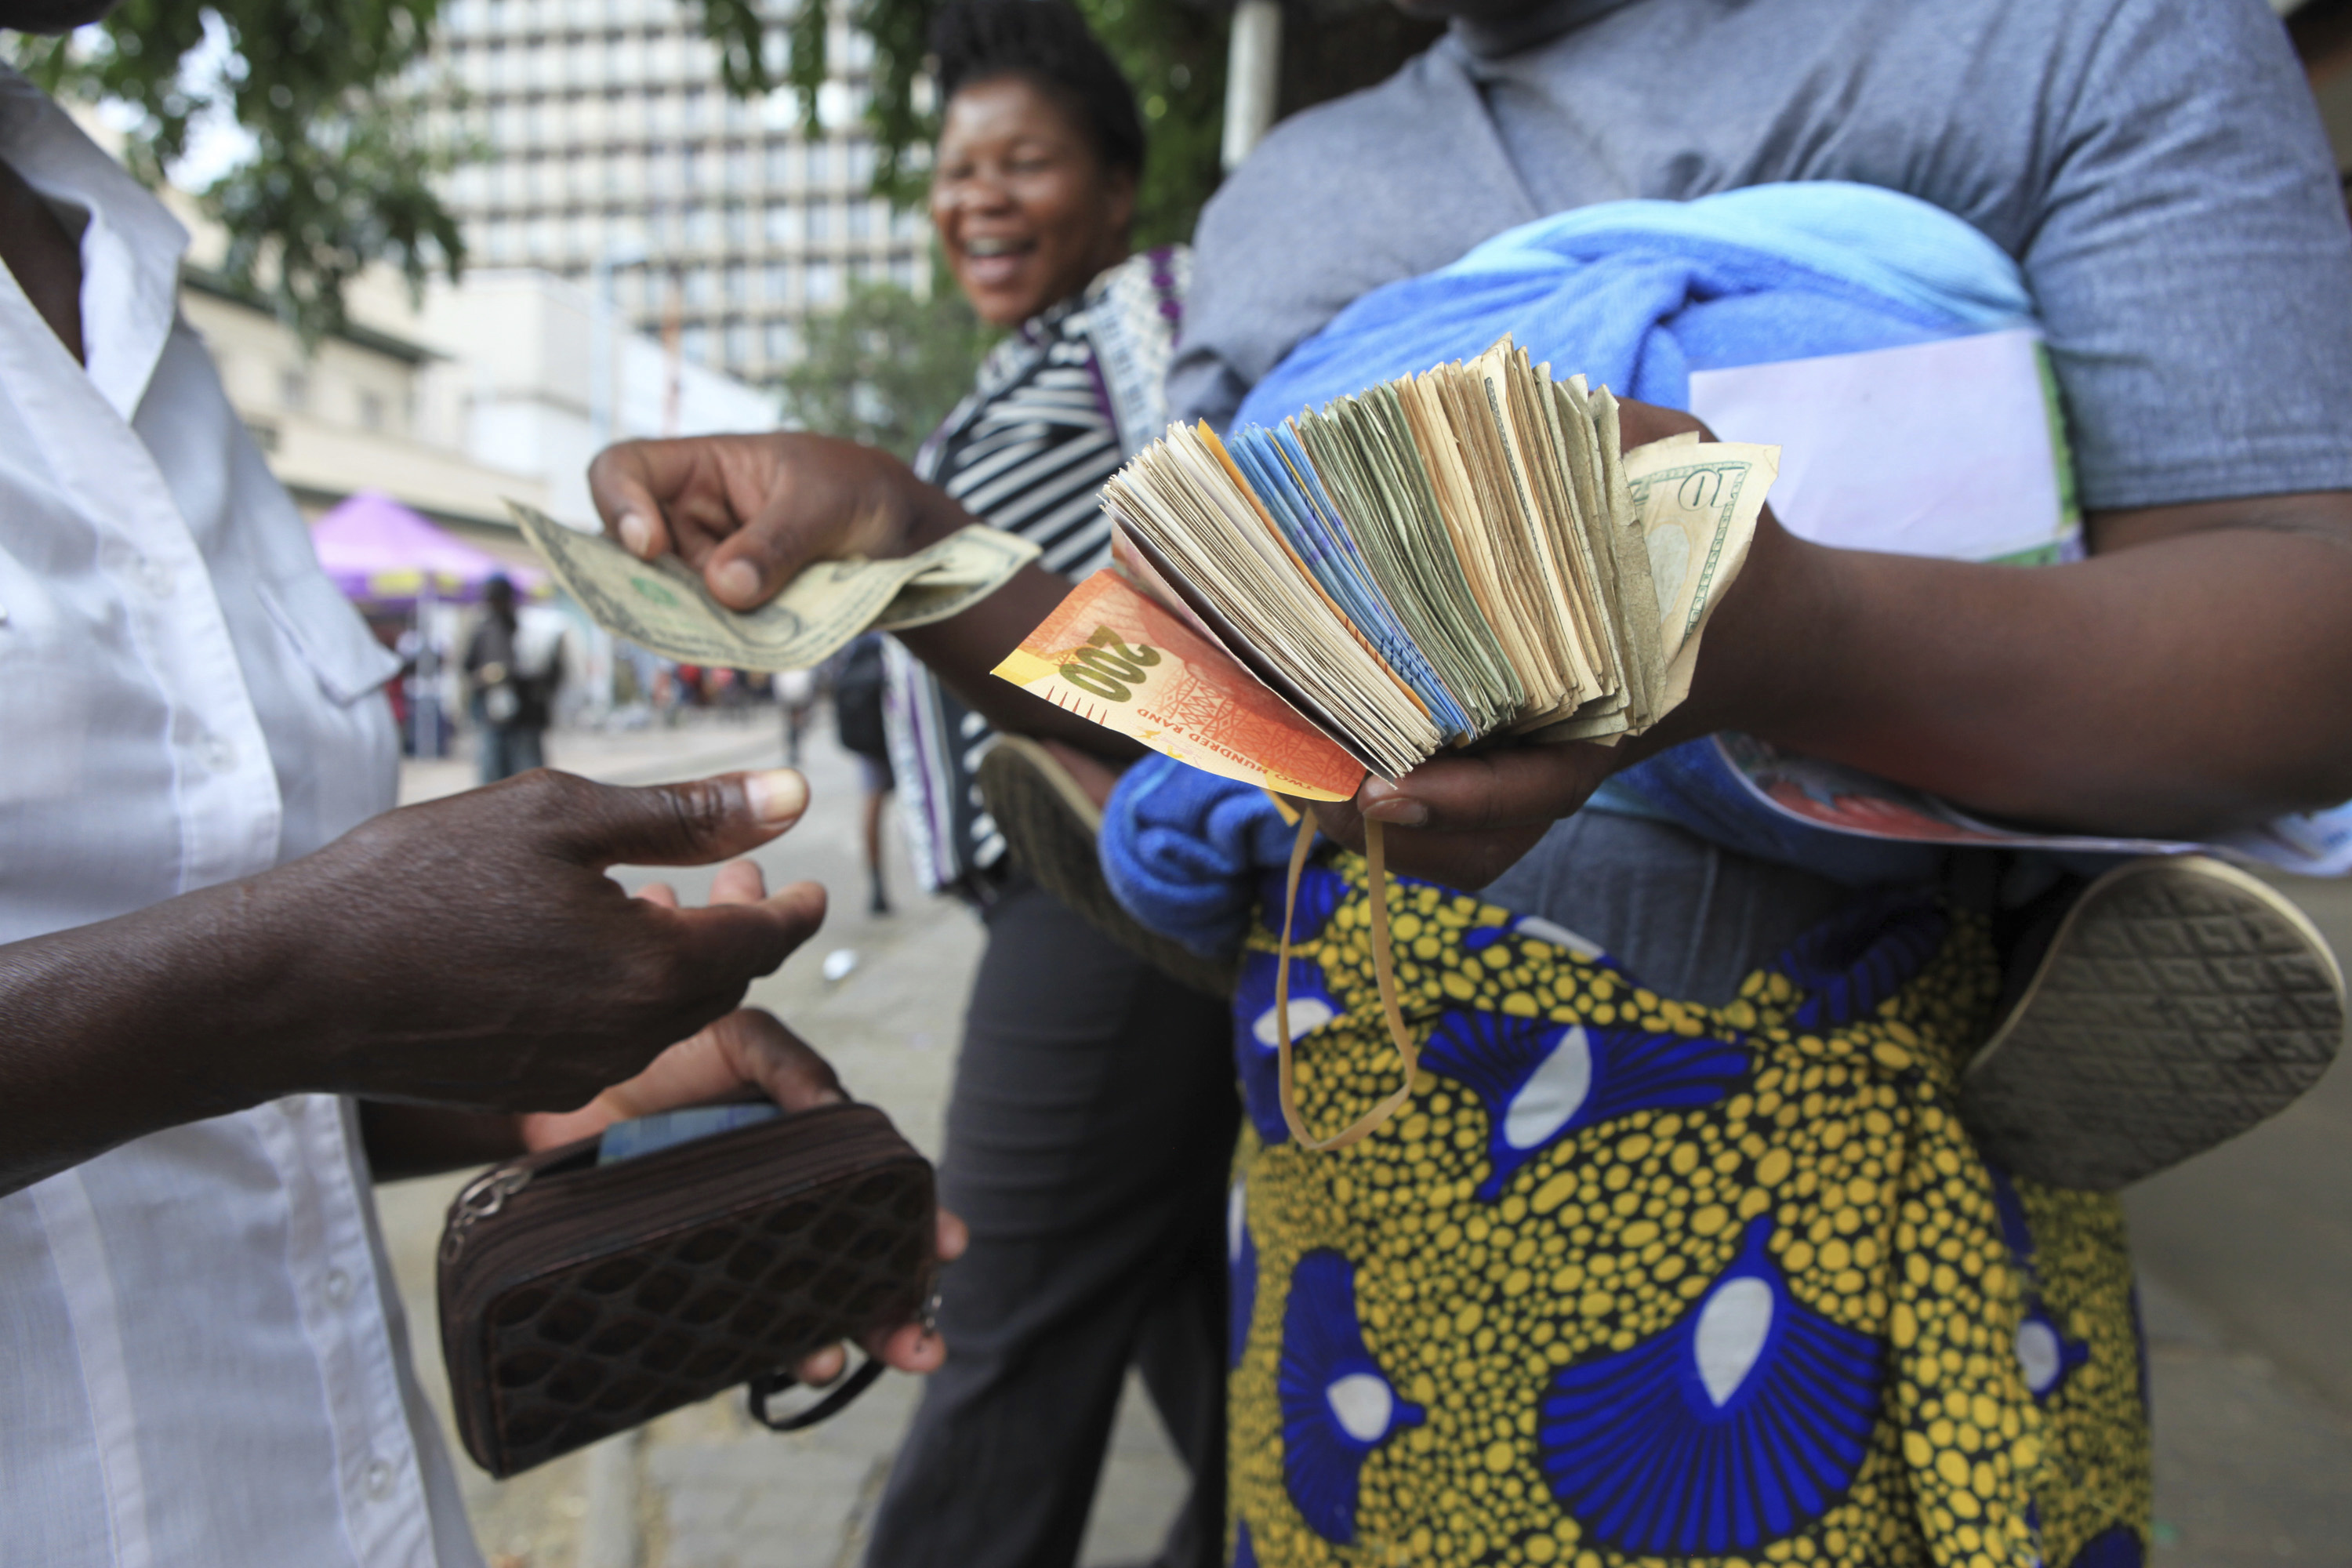 Улична обмяна на пари в Хараре. Около 5 щ.д. струва една банкнота от 100 трилиона долара на Зимбабве